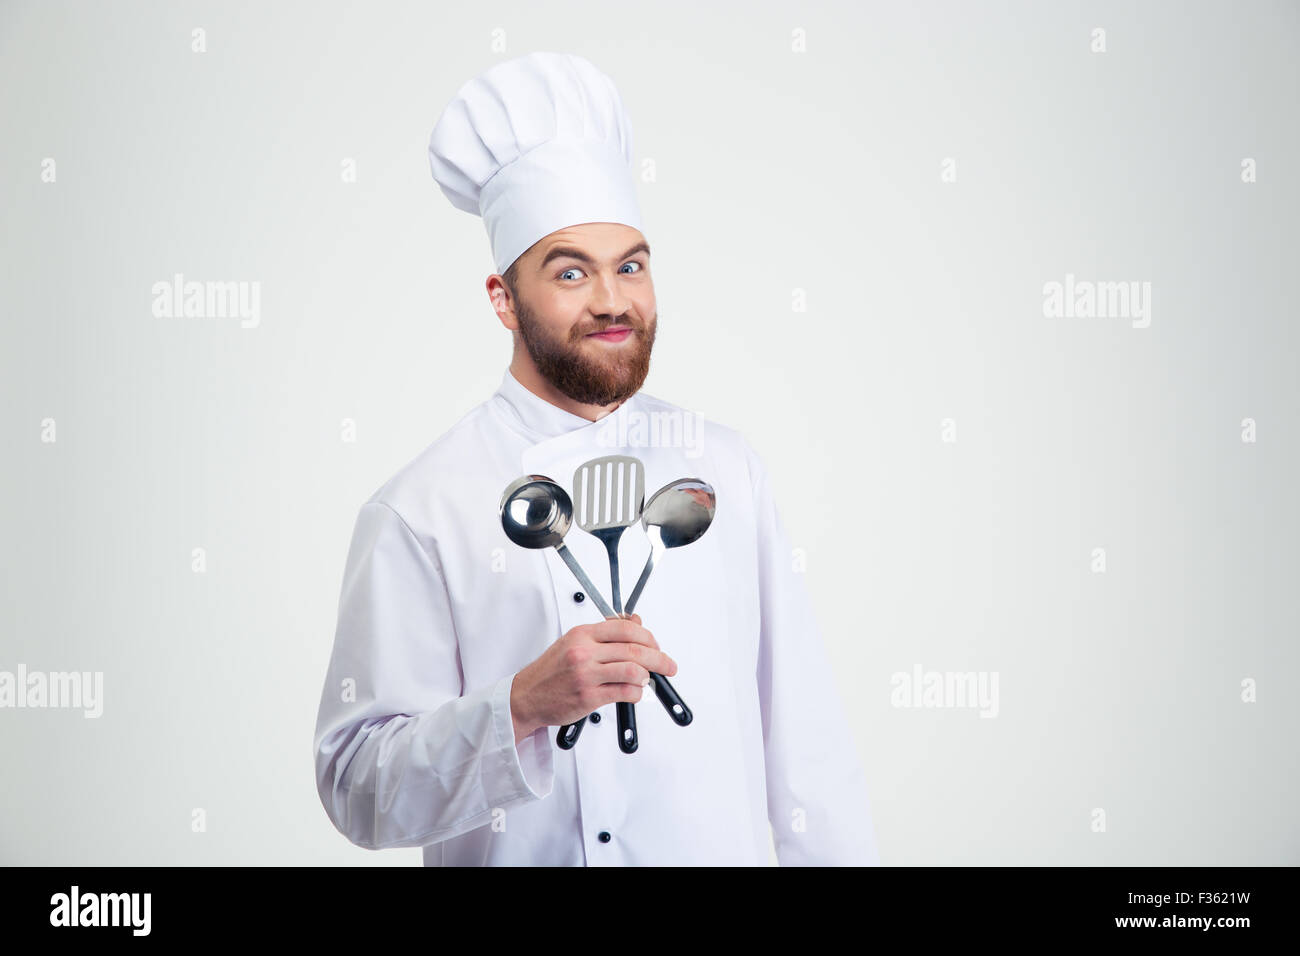 Ritratto di un maschio divertenti chef di cucina azienda cucchiai isolato su uno sfondo bianco Foto Stock